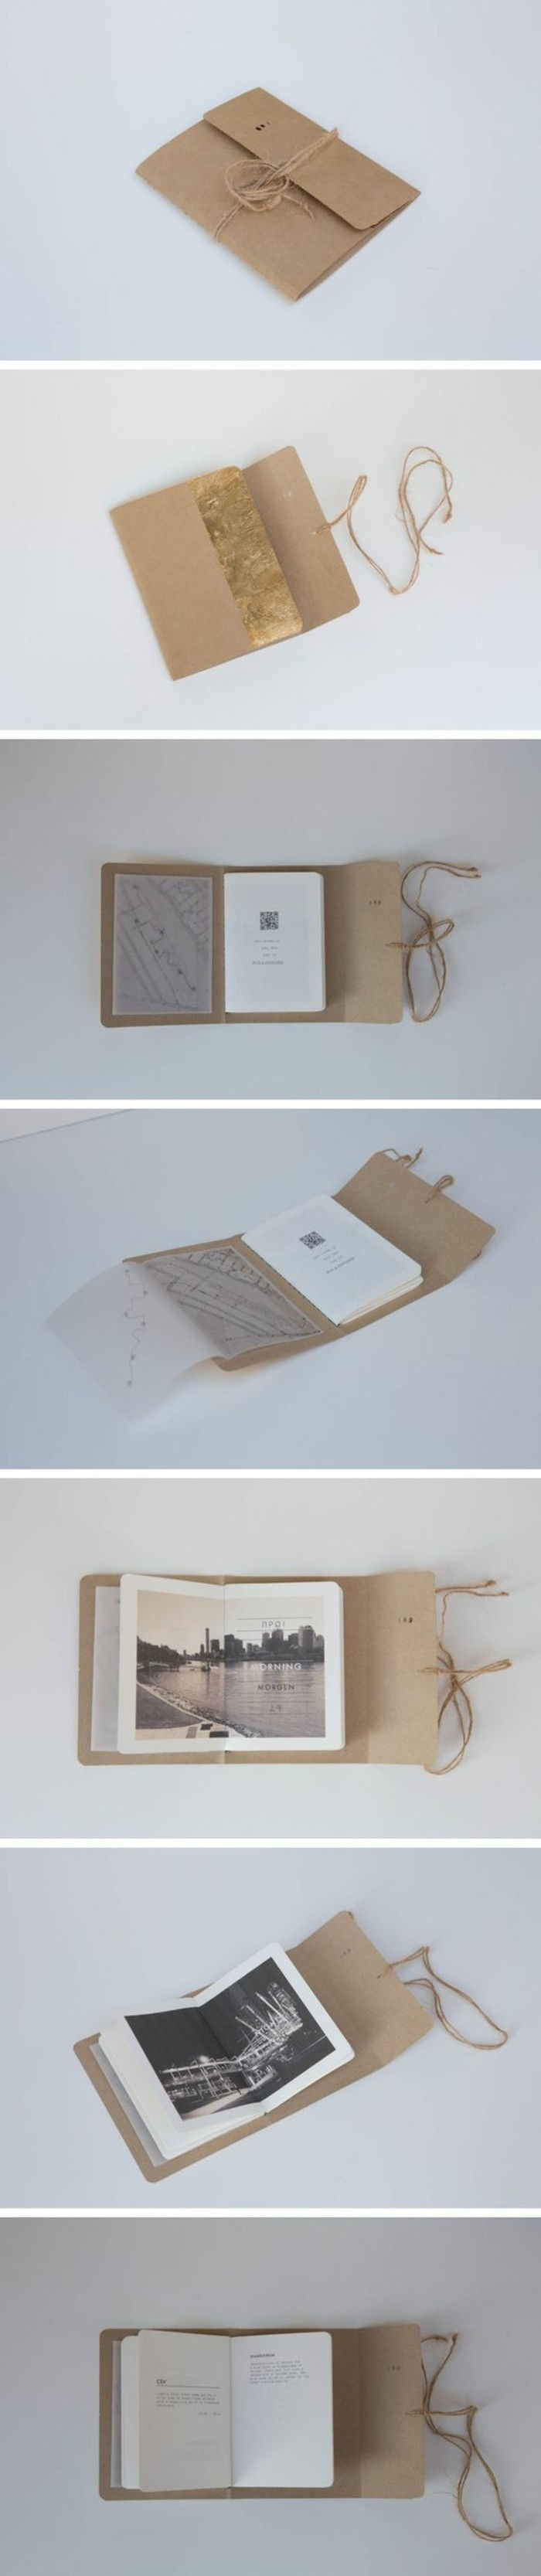 Boka kuvert själv-making book-själv-göra-papper-bok själv kuvert-making